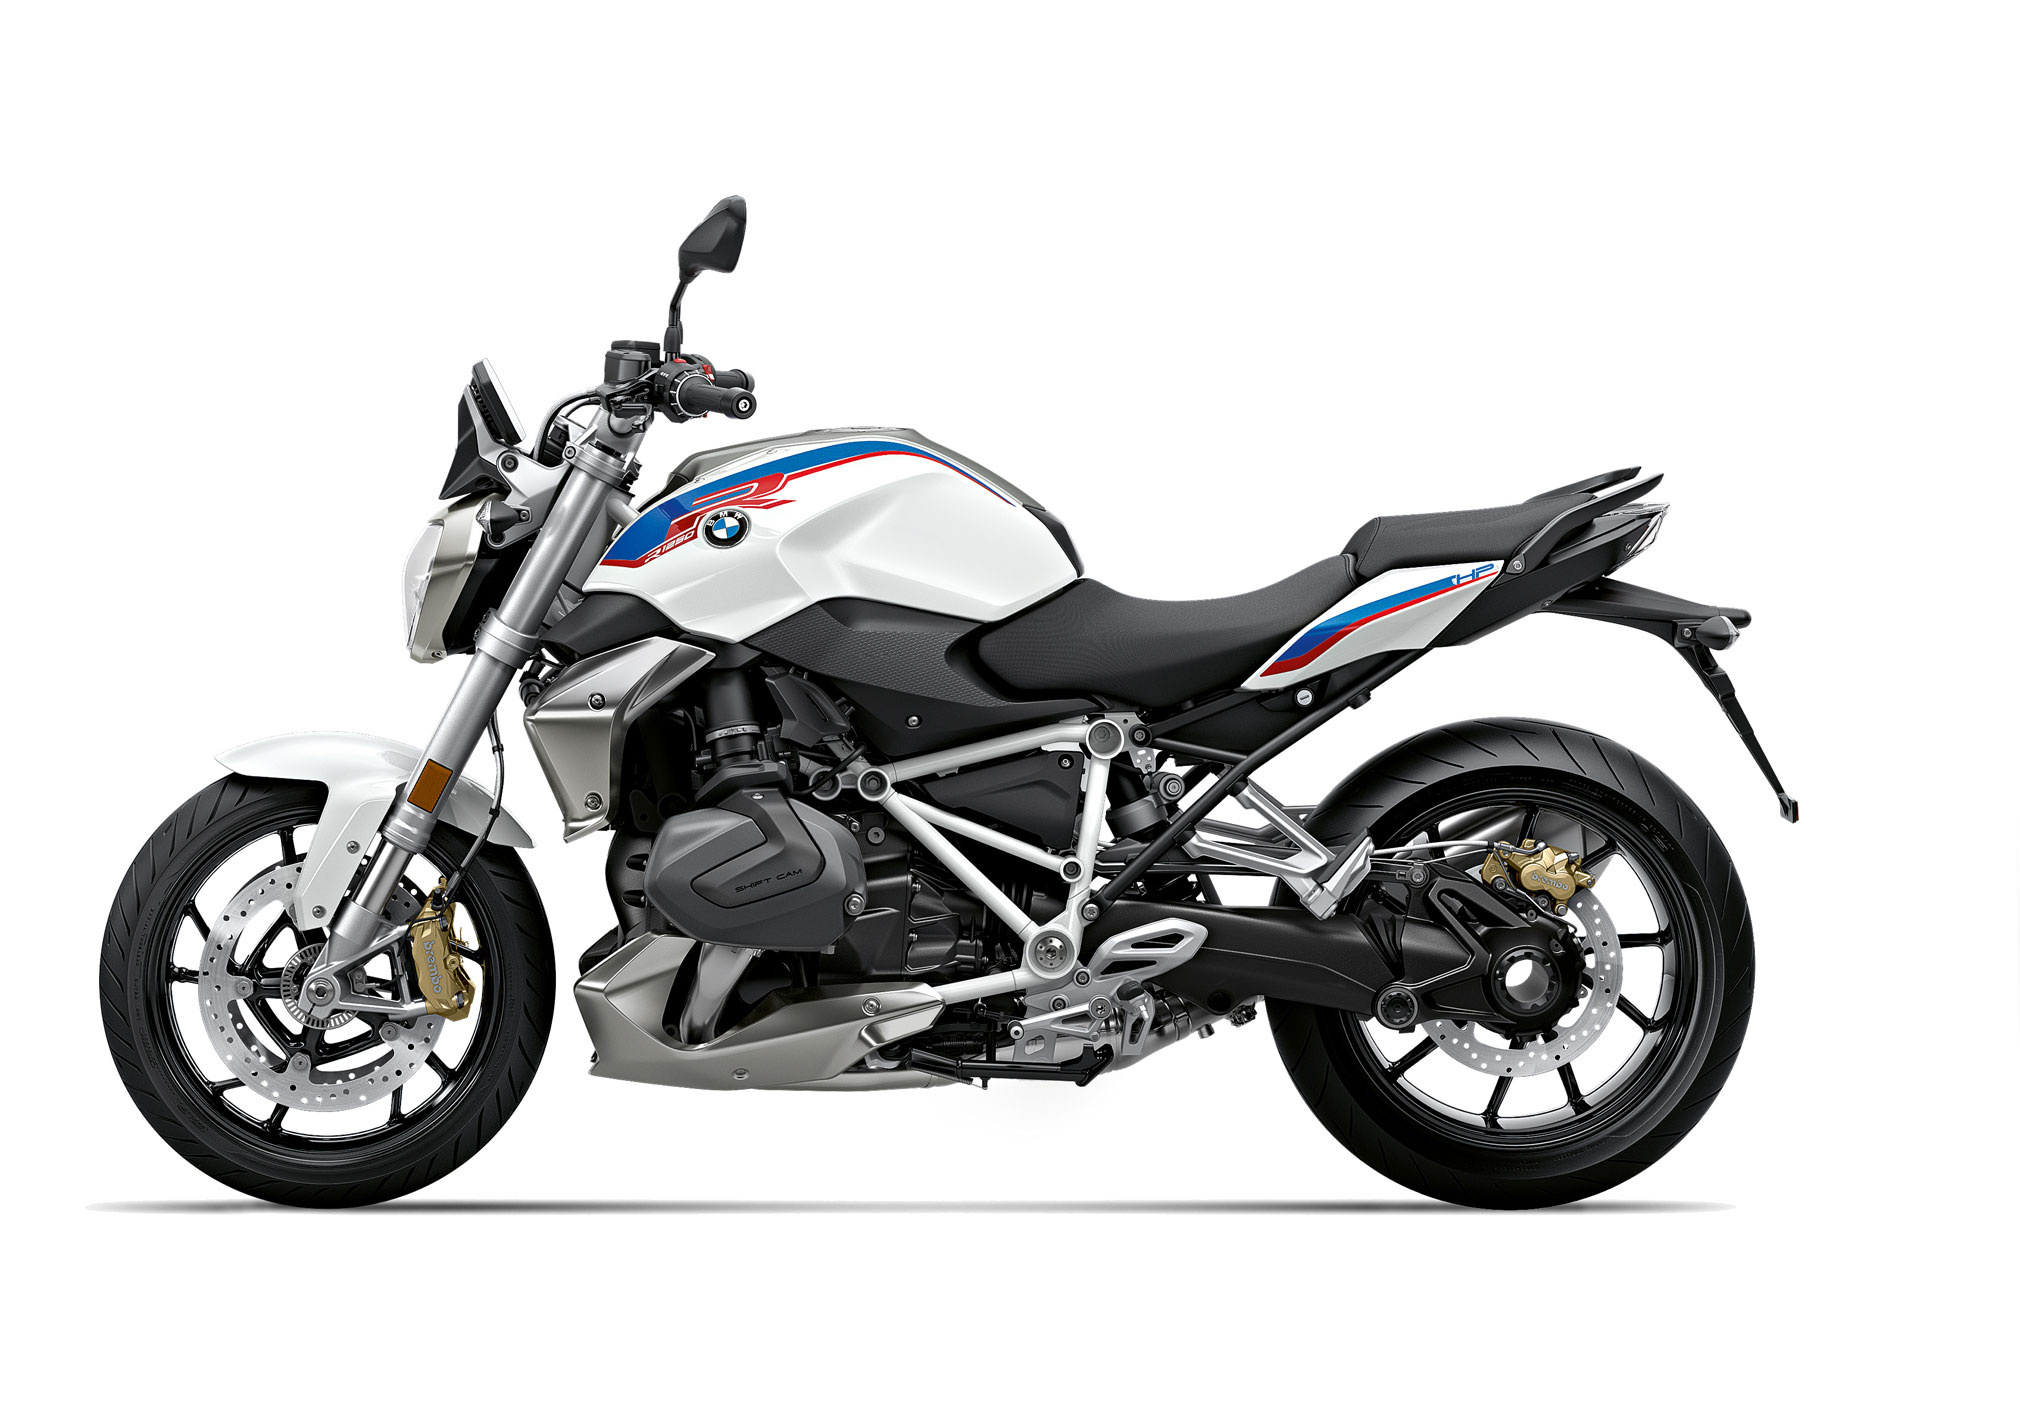 BMW R 1250 R, 2020 model, Ultimate guide, Total Motorcycle, 2020x1430 HD Desktop